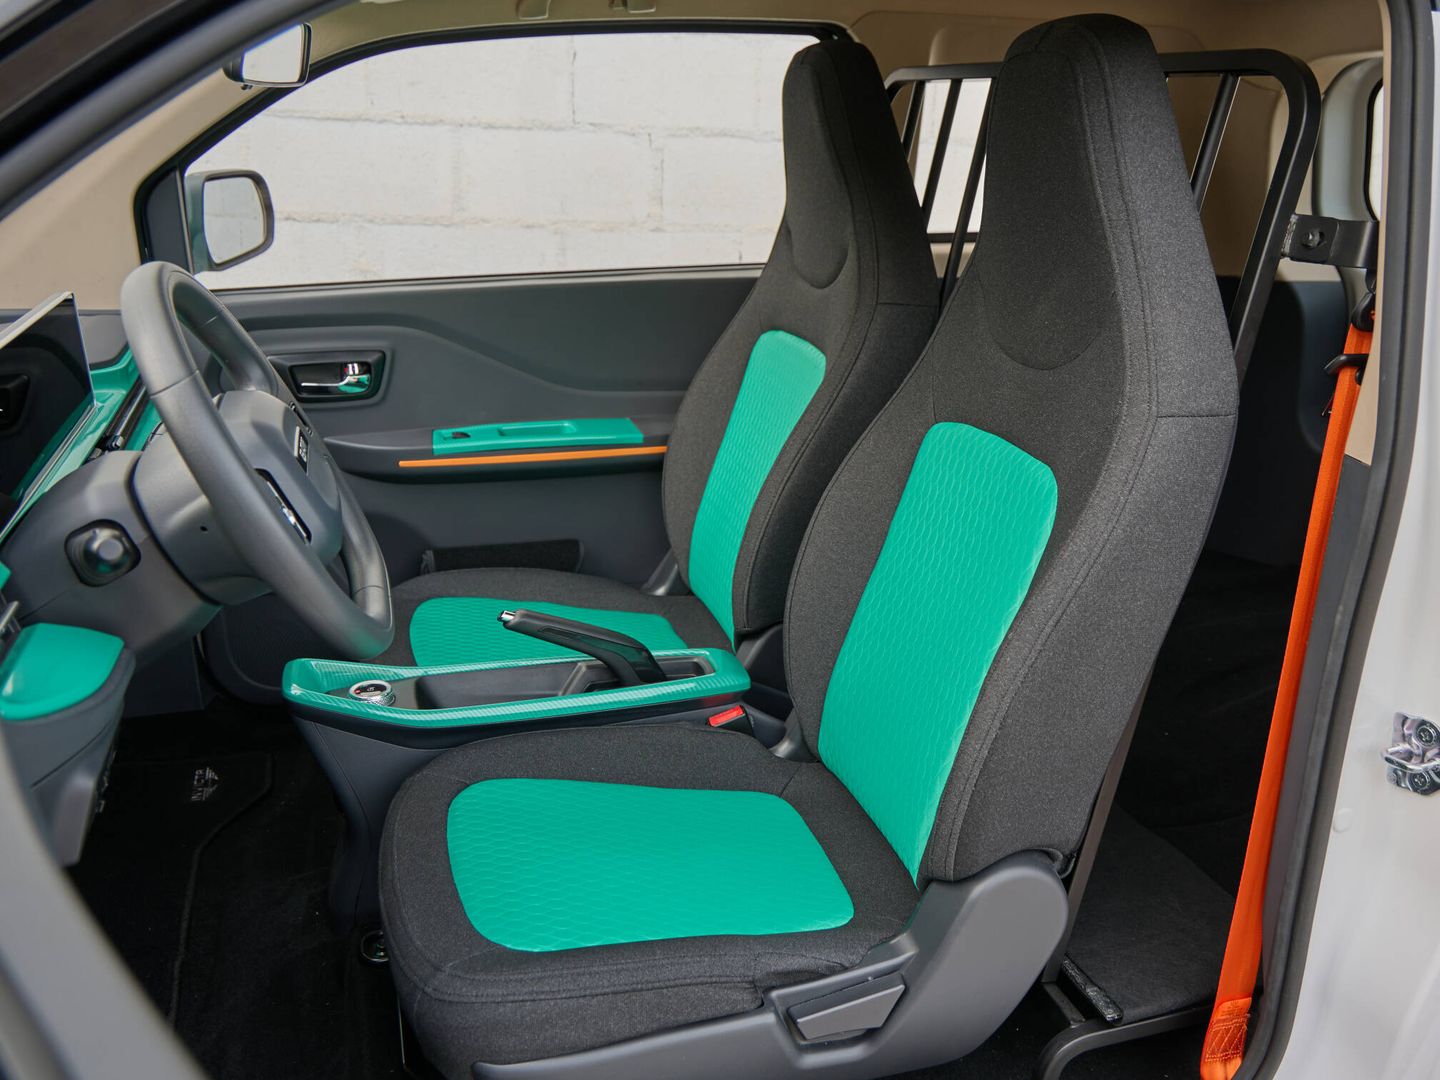 Los asientos son correctos y cuentan con ajustes manuales para adaptar la posición.